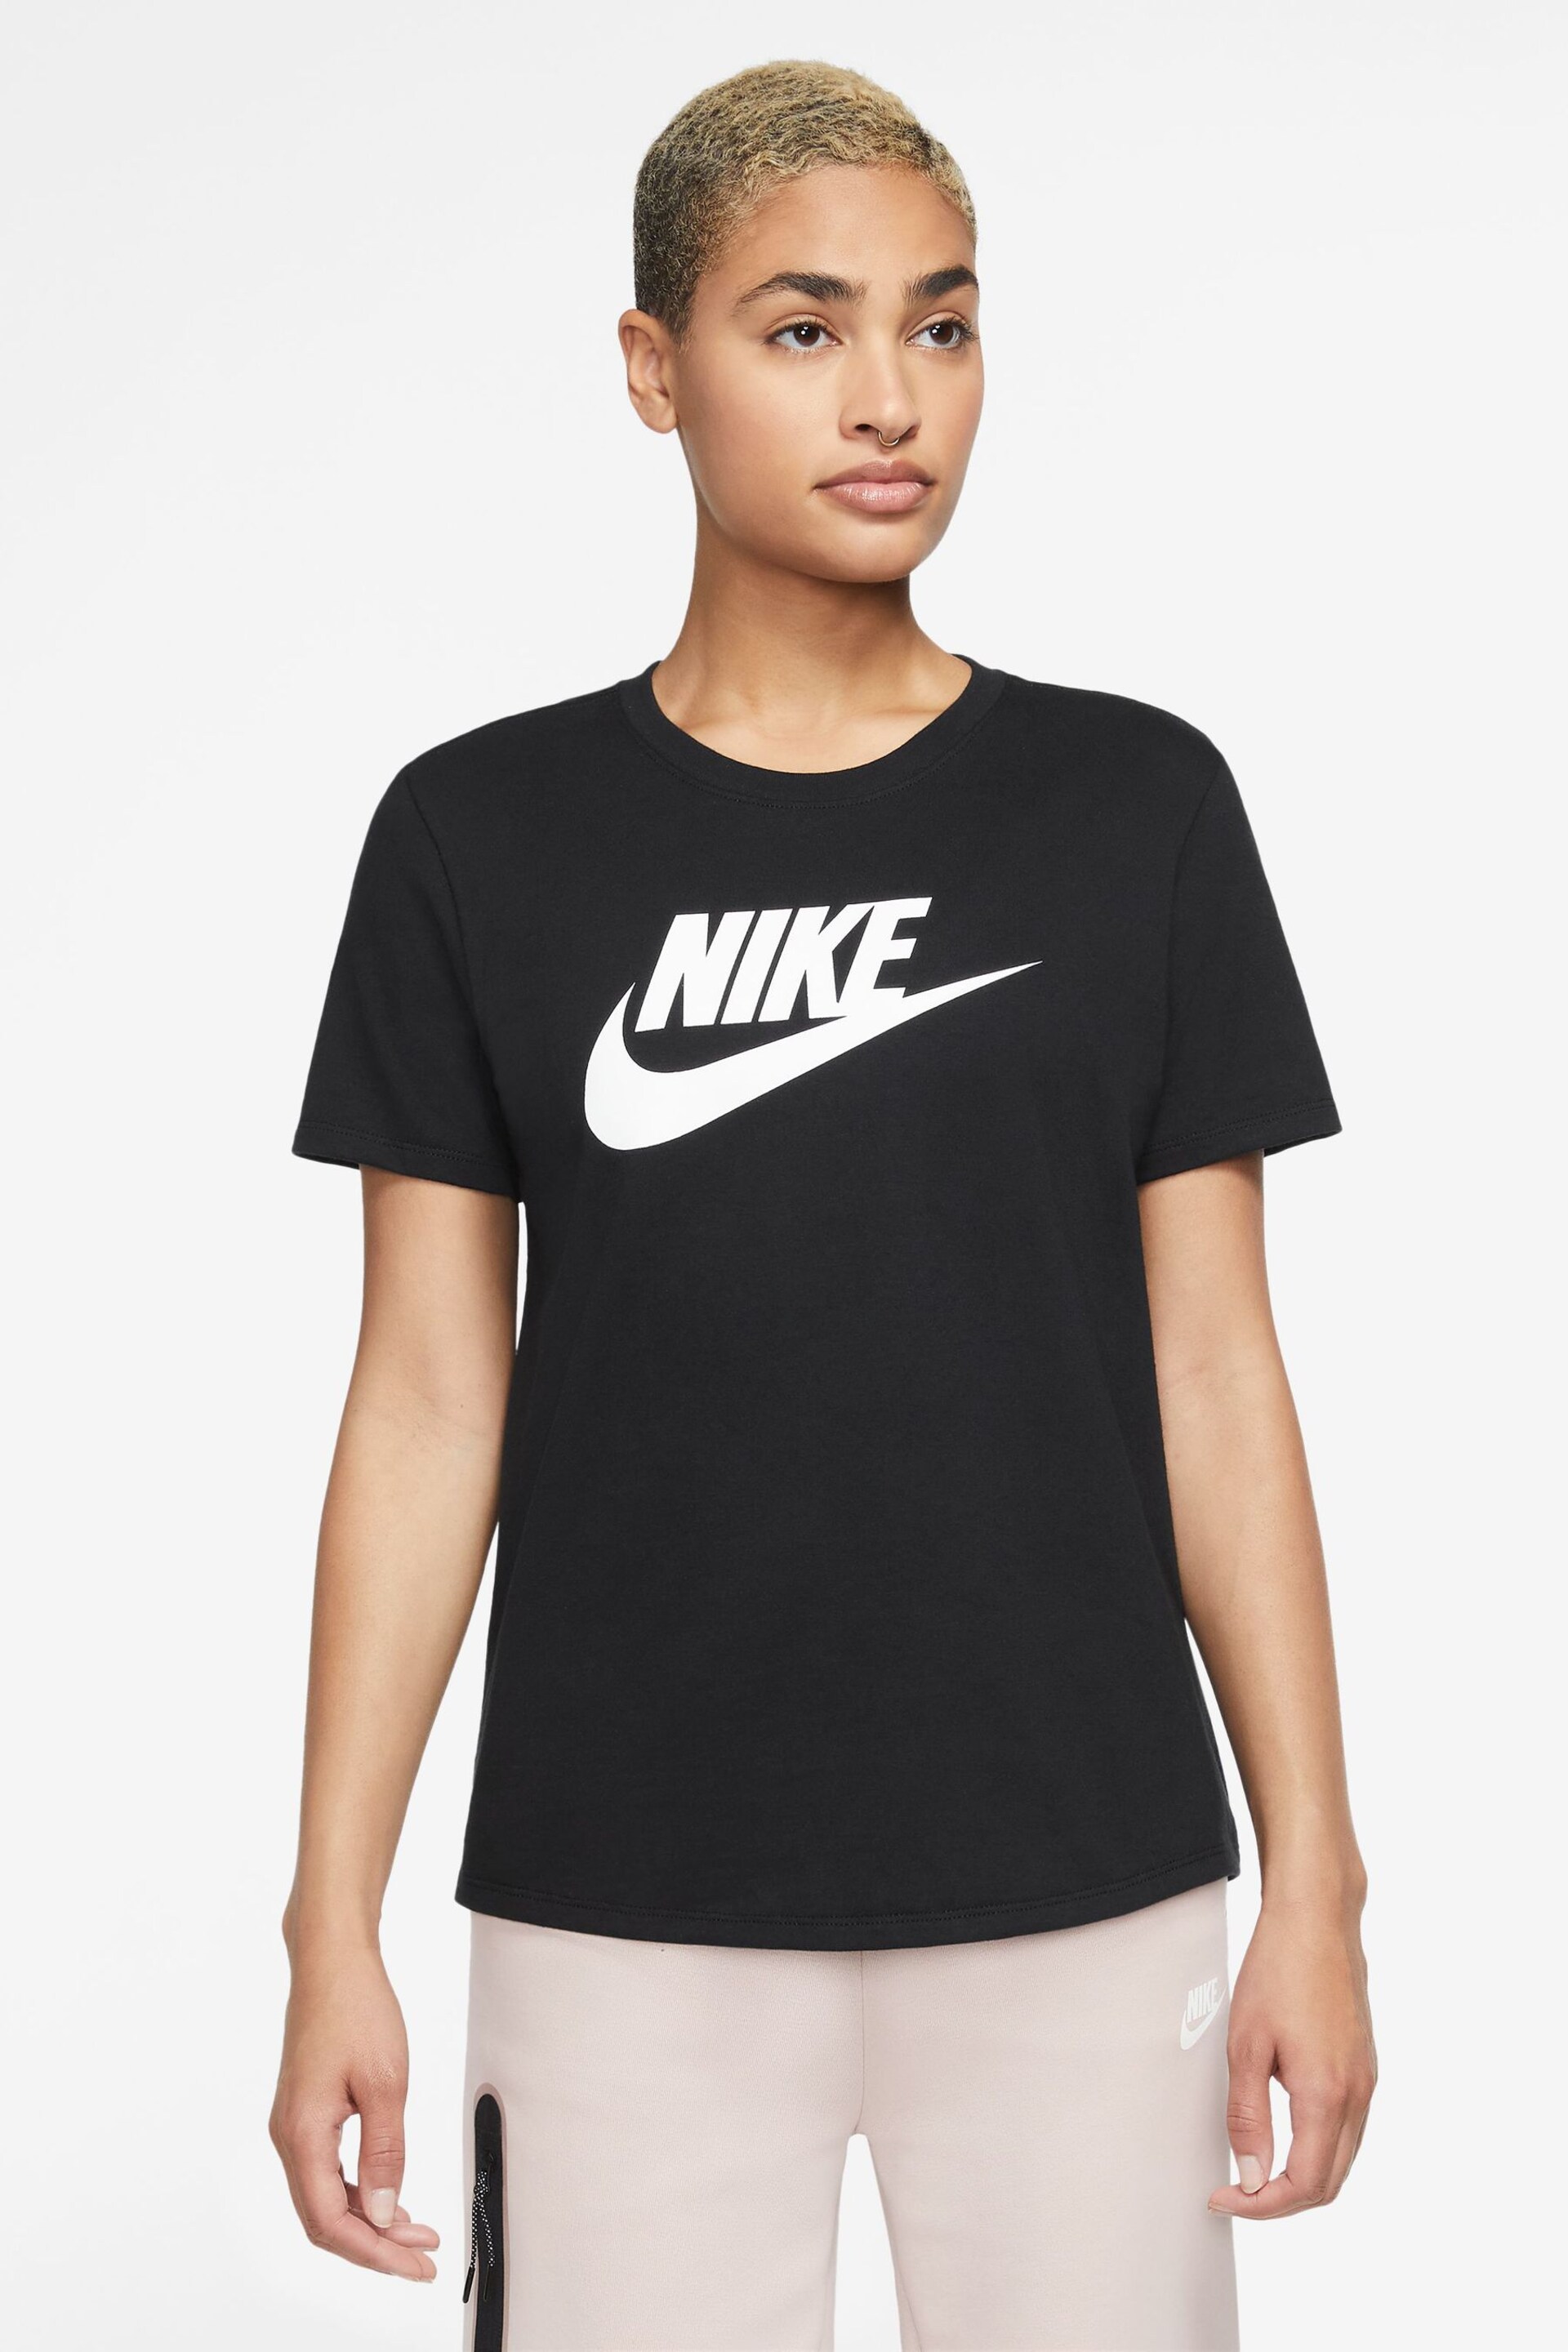 Nike Black Essential Icon T-Shirt - Image 1 of 3